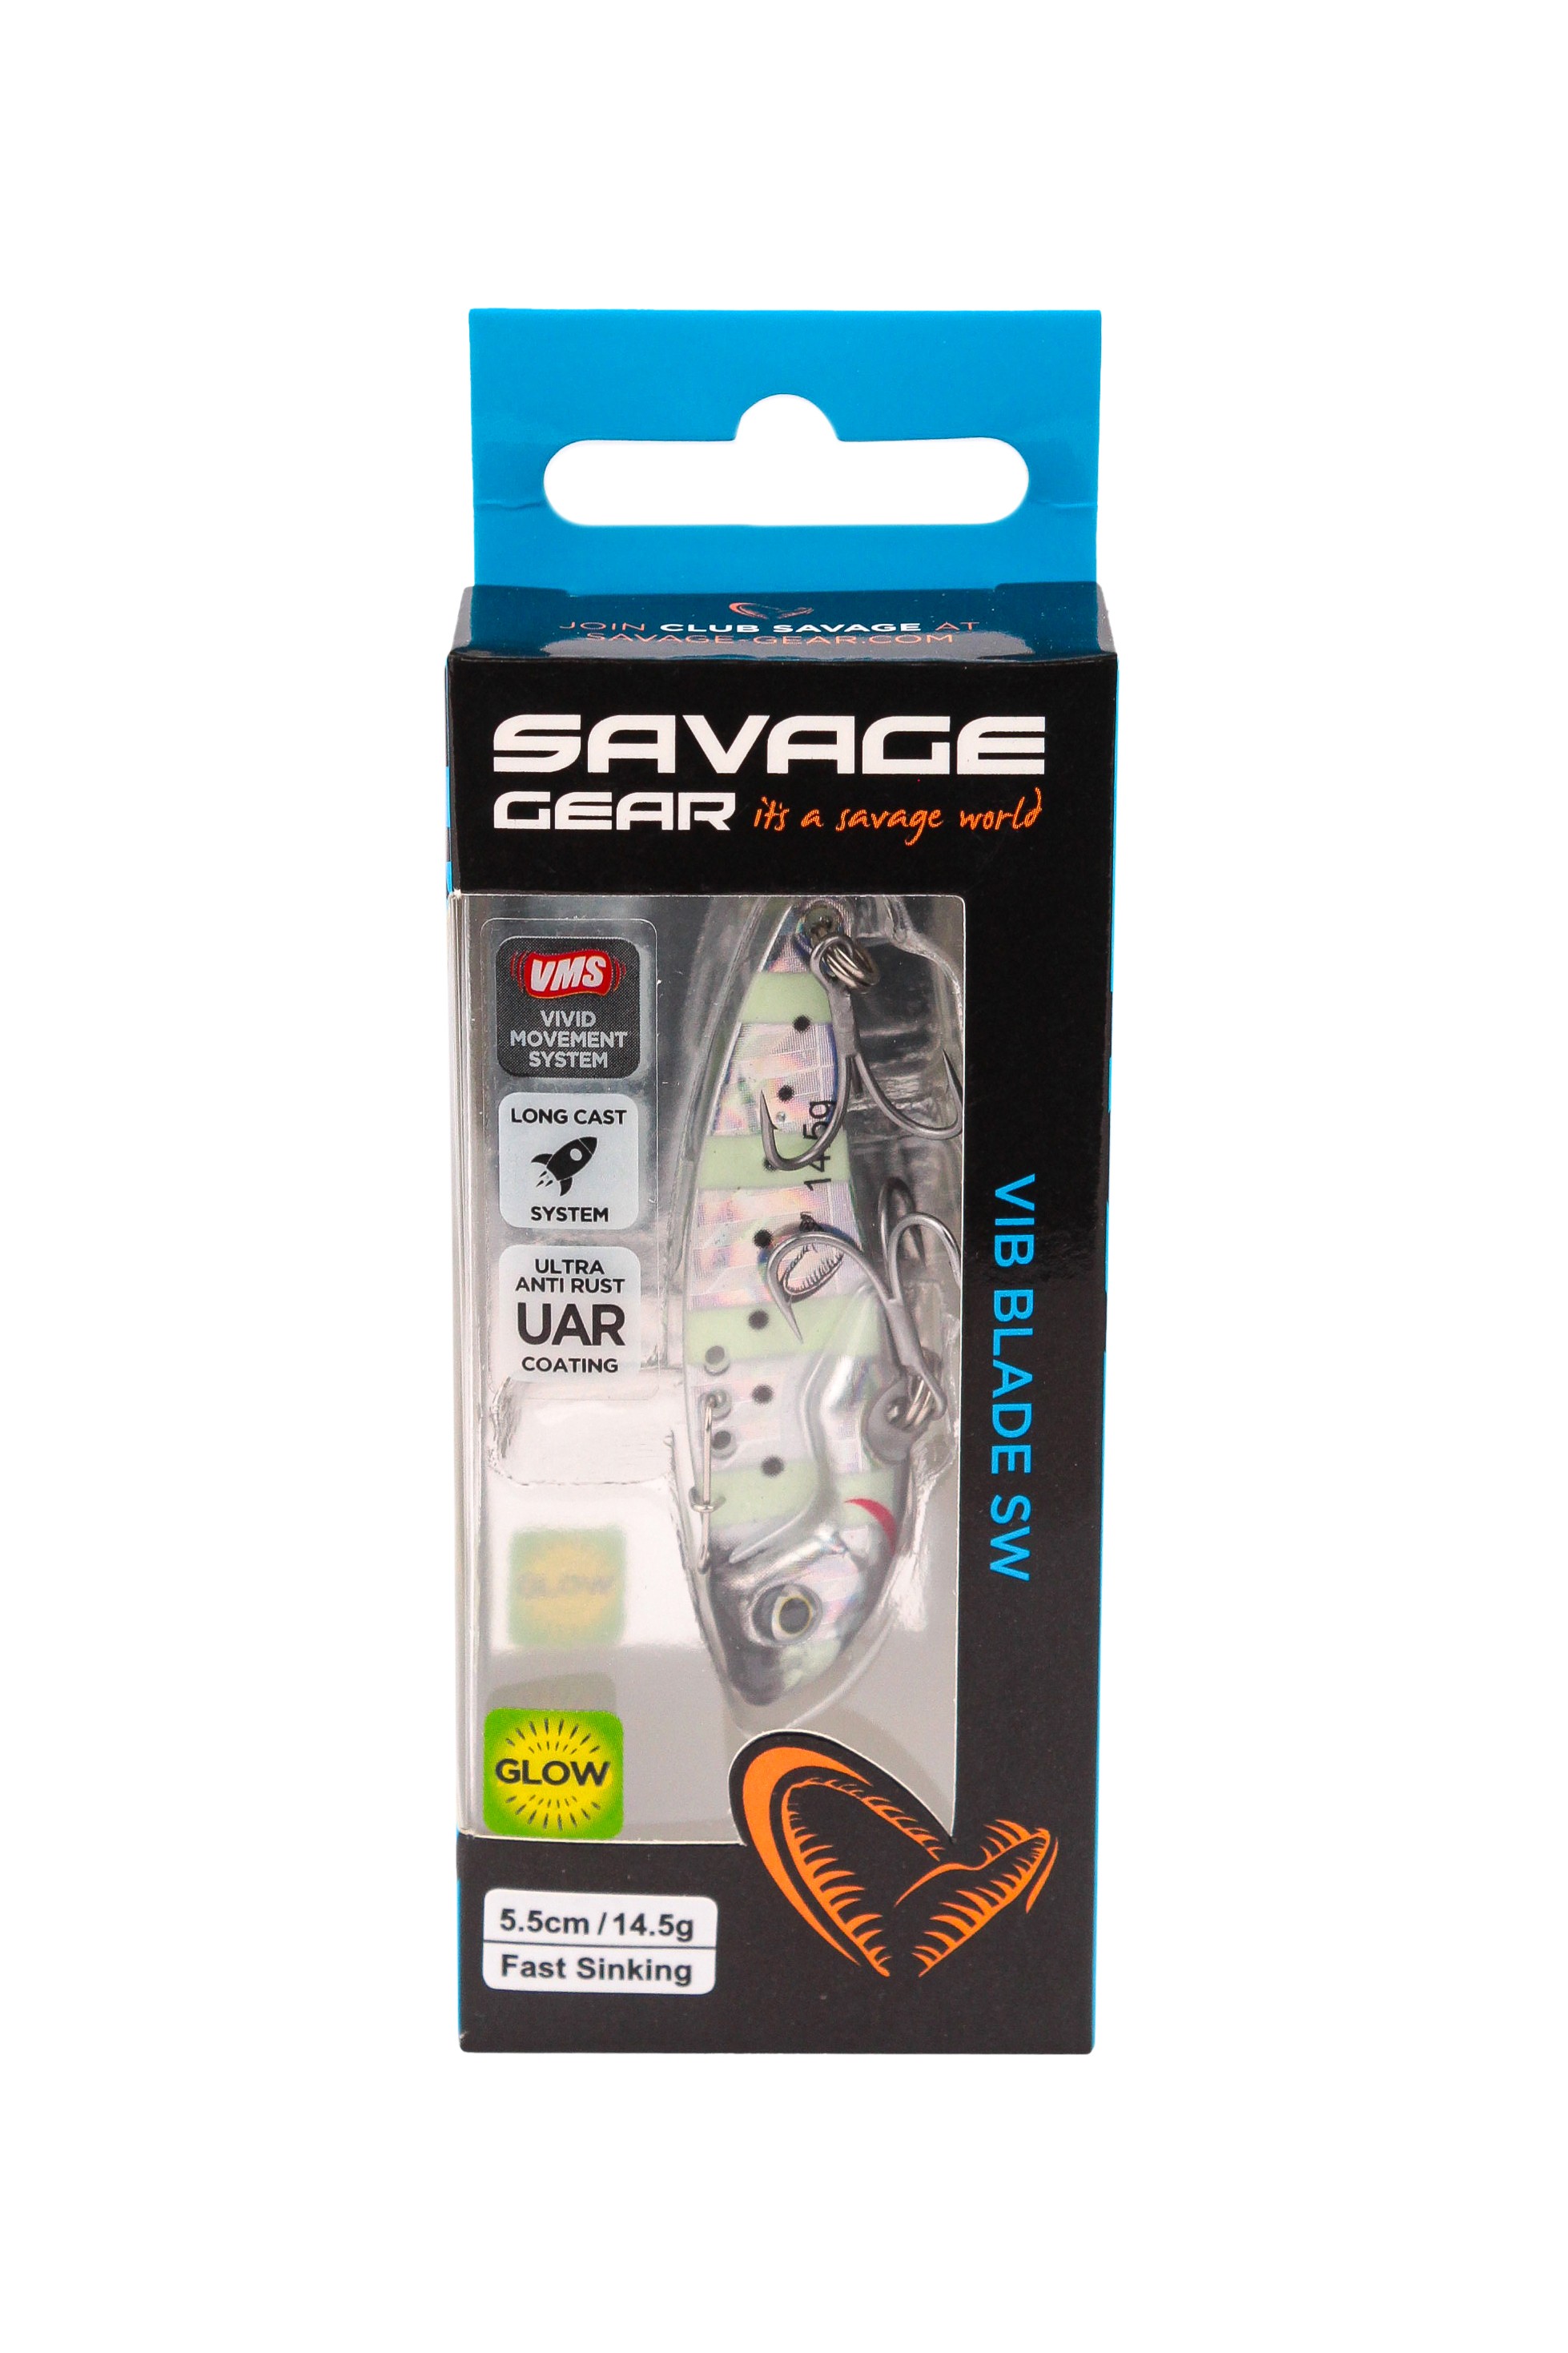 Блесна Savage Gear Vib blade SW 5,5см 14,5гр fast sinking zebra gрlow - фото 1